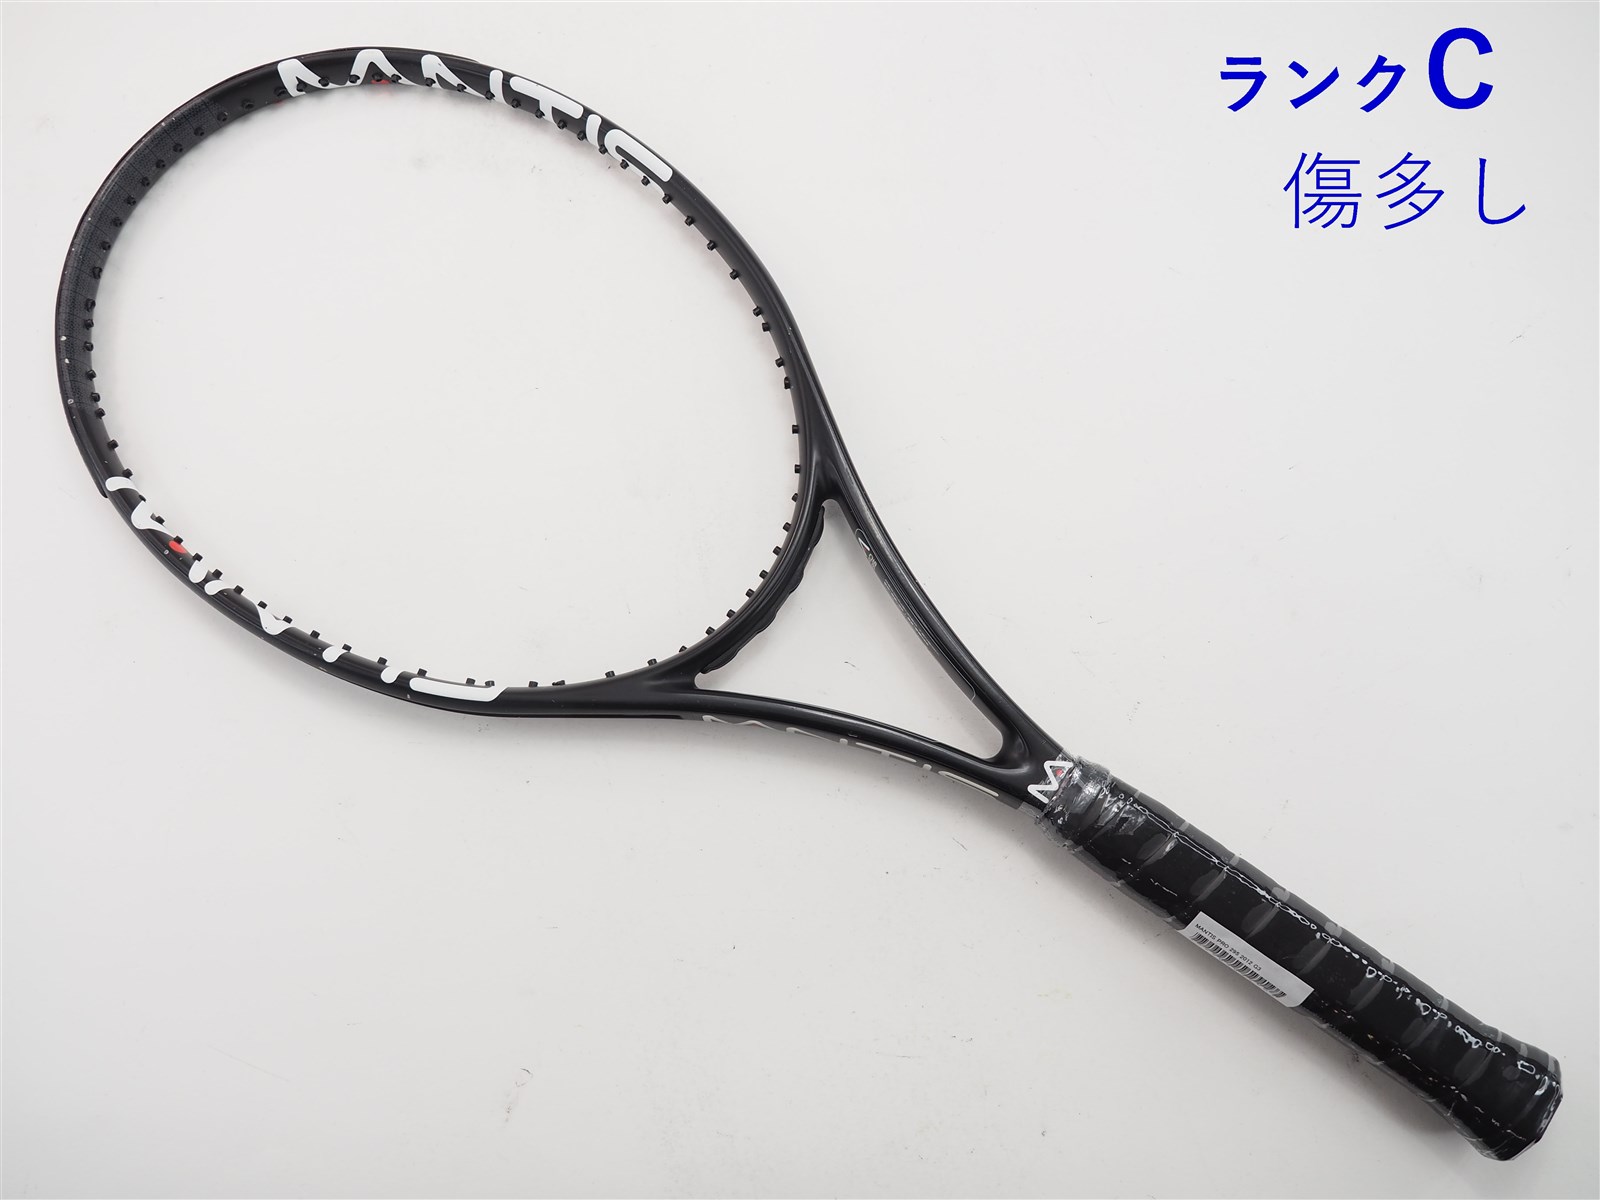 テニスラケット マンティス マンティス プロ 295 2012年モデル (G3)MANTIS MANTIS PRO 295 2012303ｇ張り上げガット状態